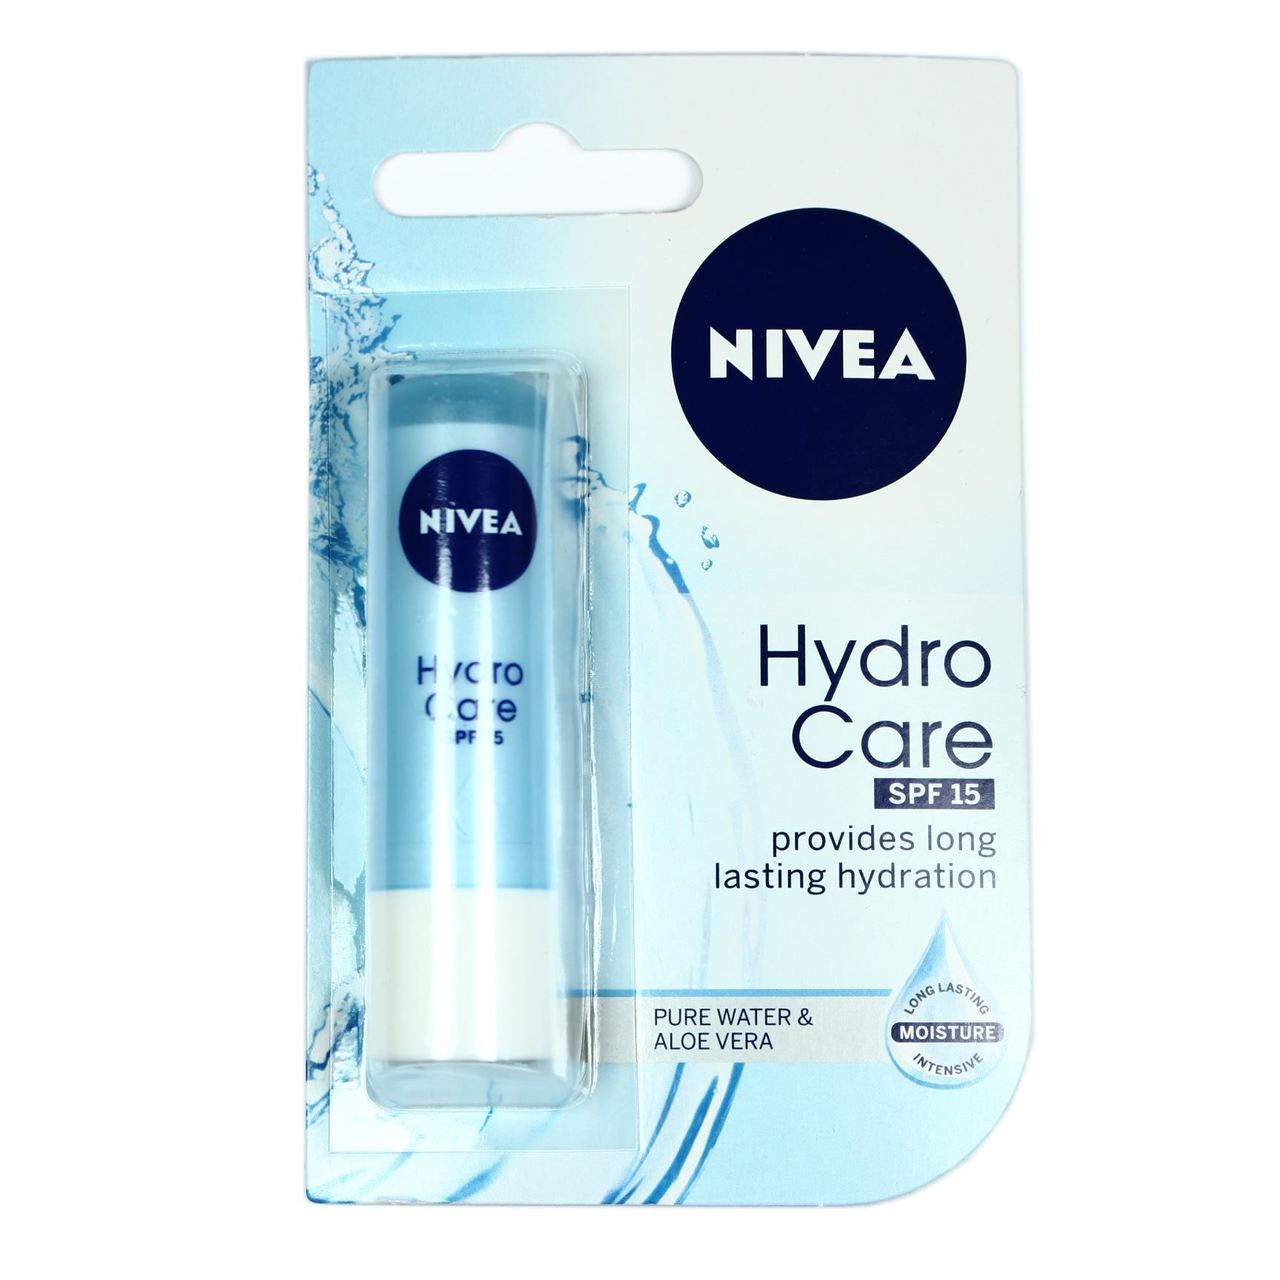 NIVEA Hydro Care Lip Balm SPF15 - Go Tiny